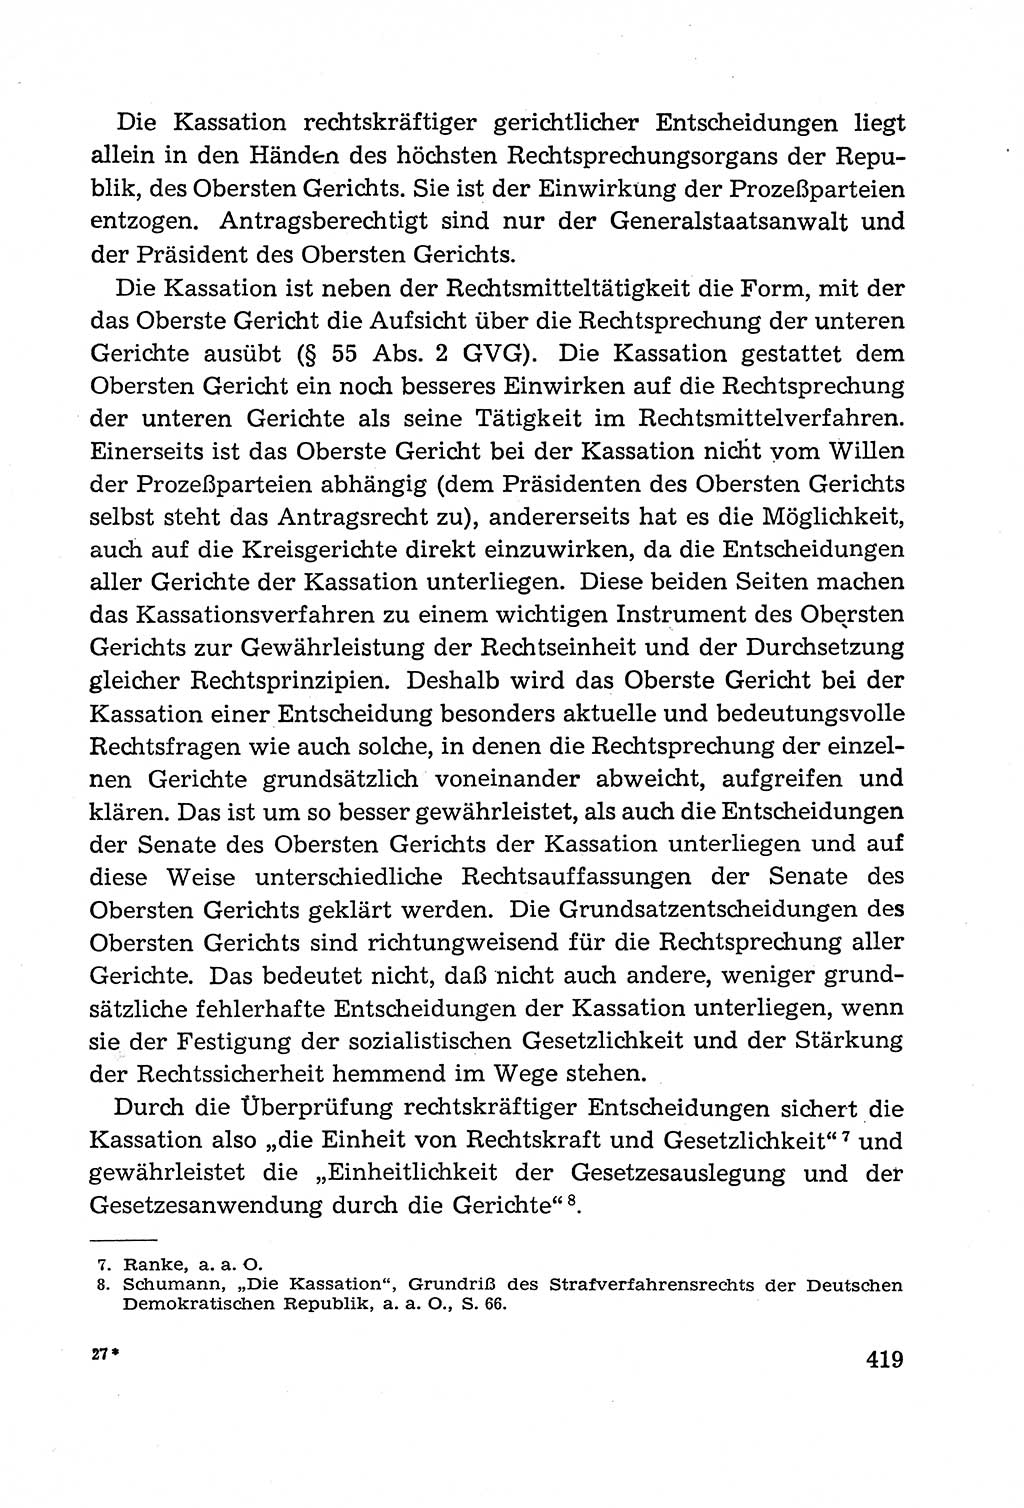 Leitfaden des Strafprozeßrechts der Deutschen Demokratischen Republik (DDR) 1959, Seite 419 (LF StPR DDR 1959, S. 419)